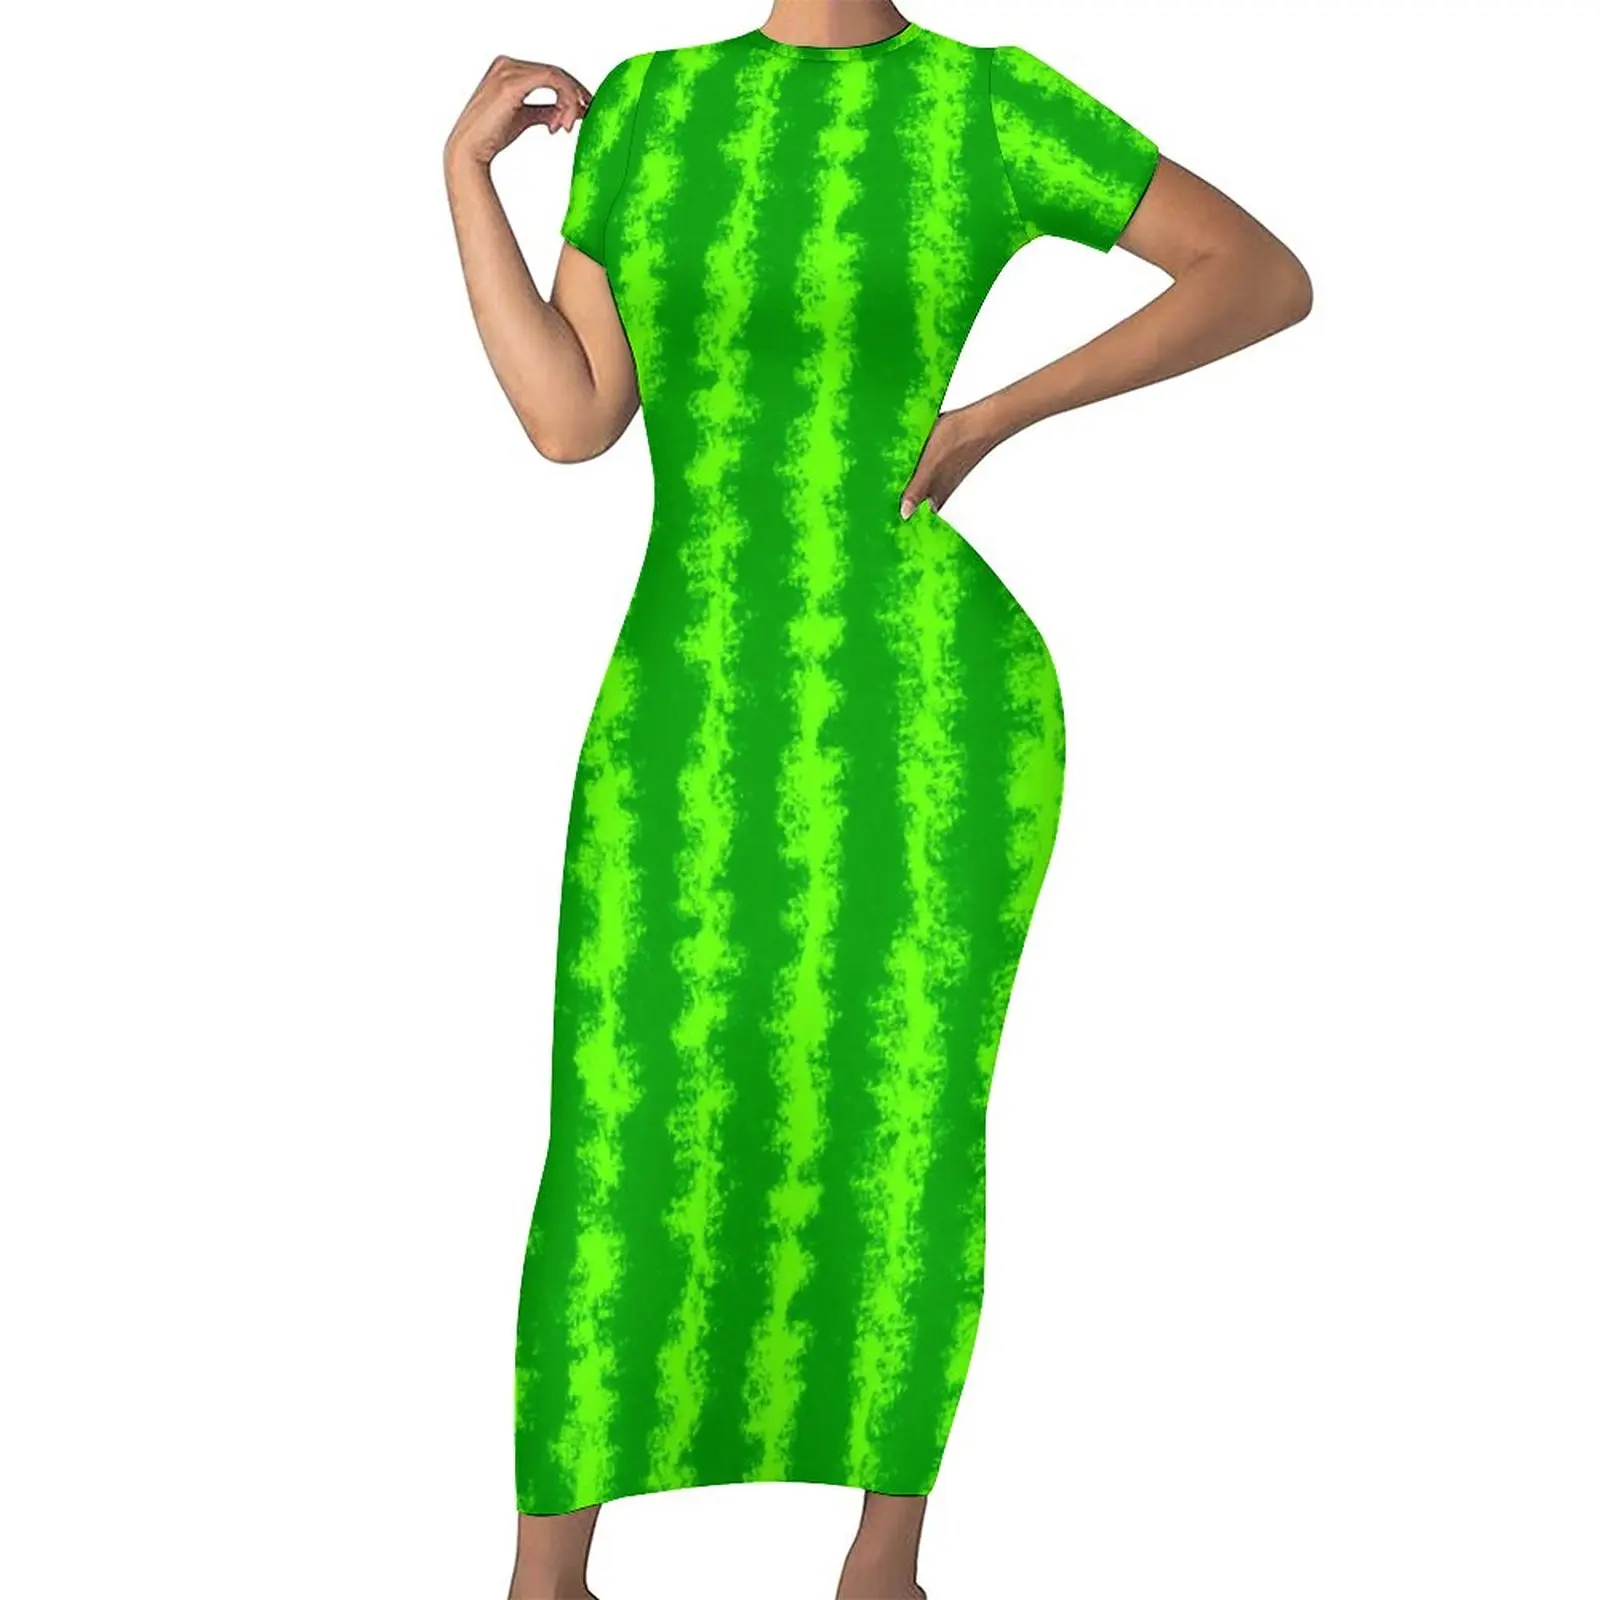 

Женское платье-макси в зеленую полоску, с принтом арбуза